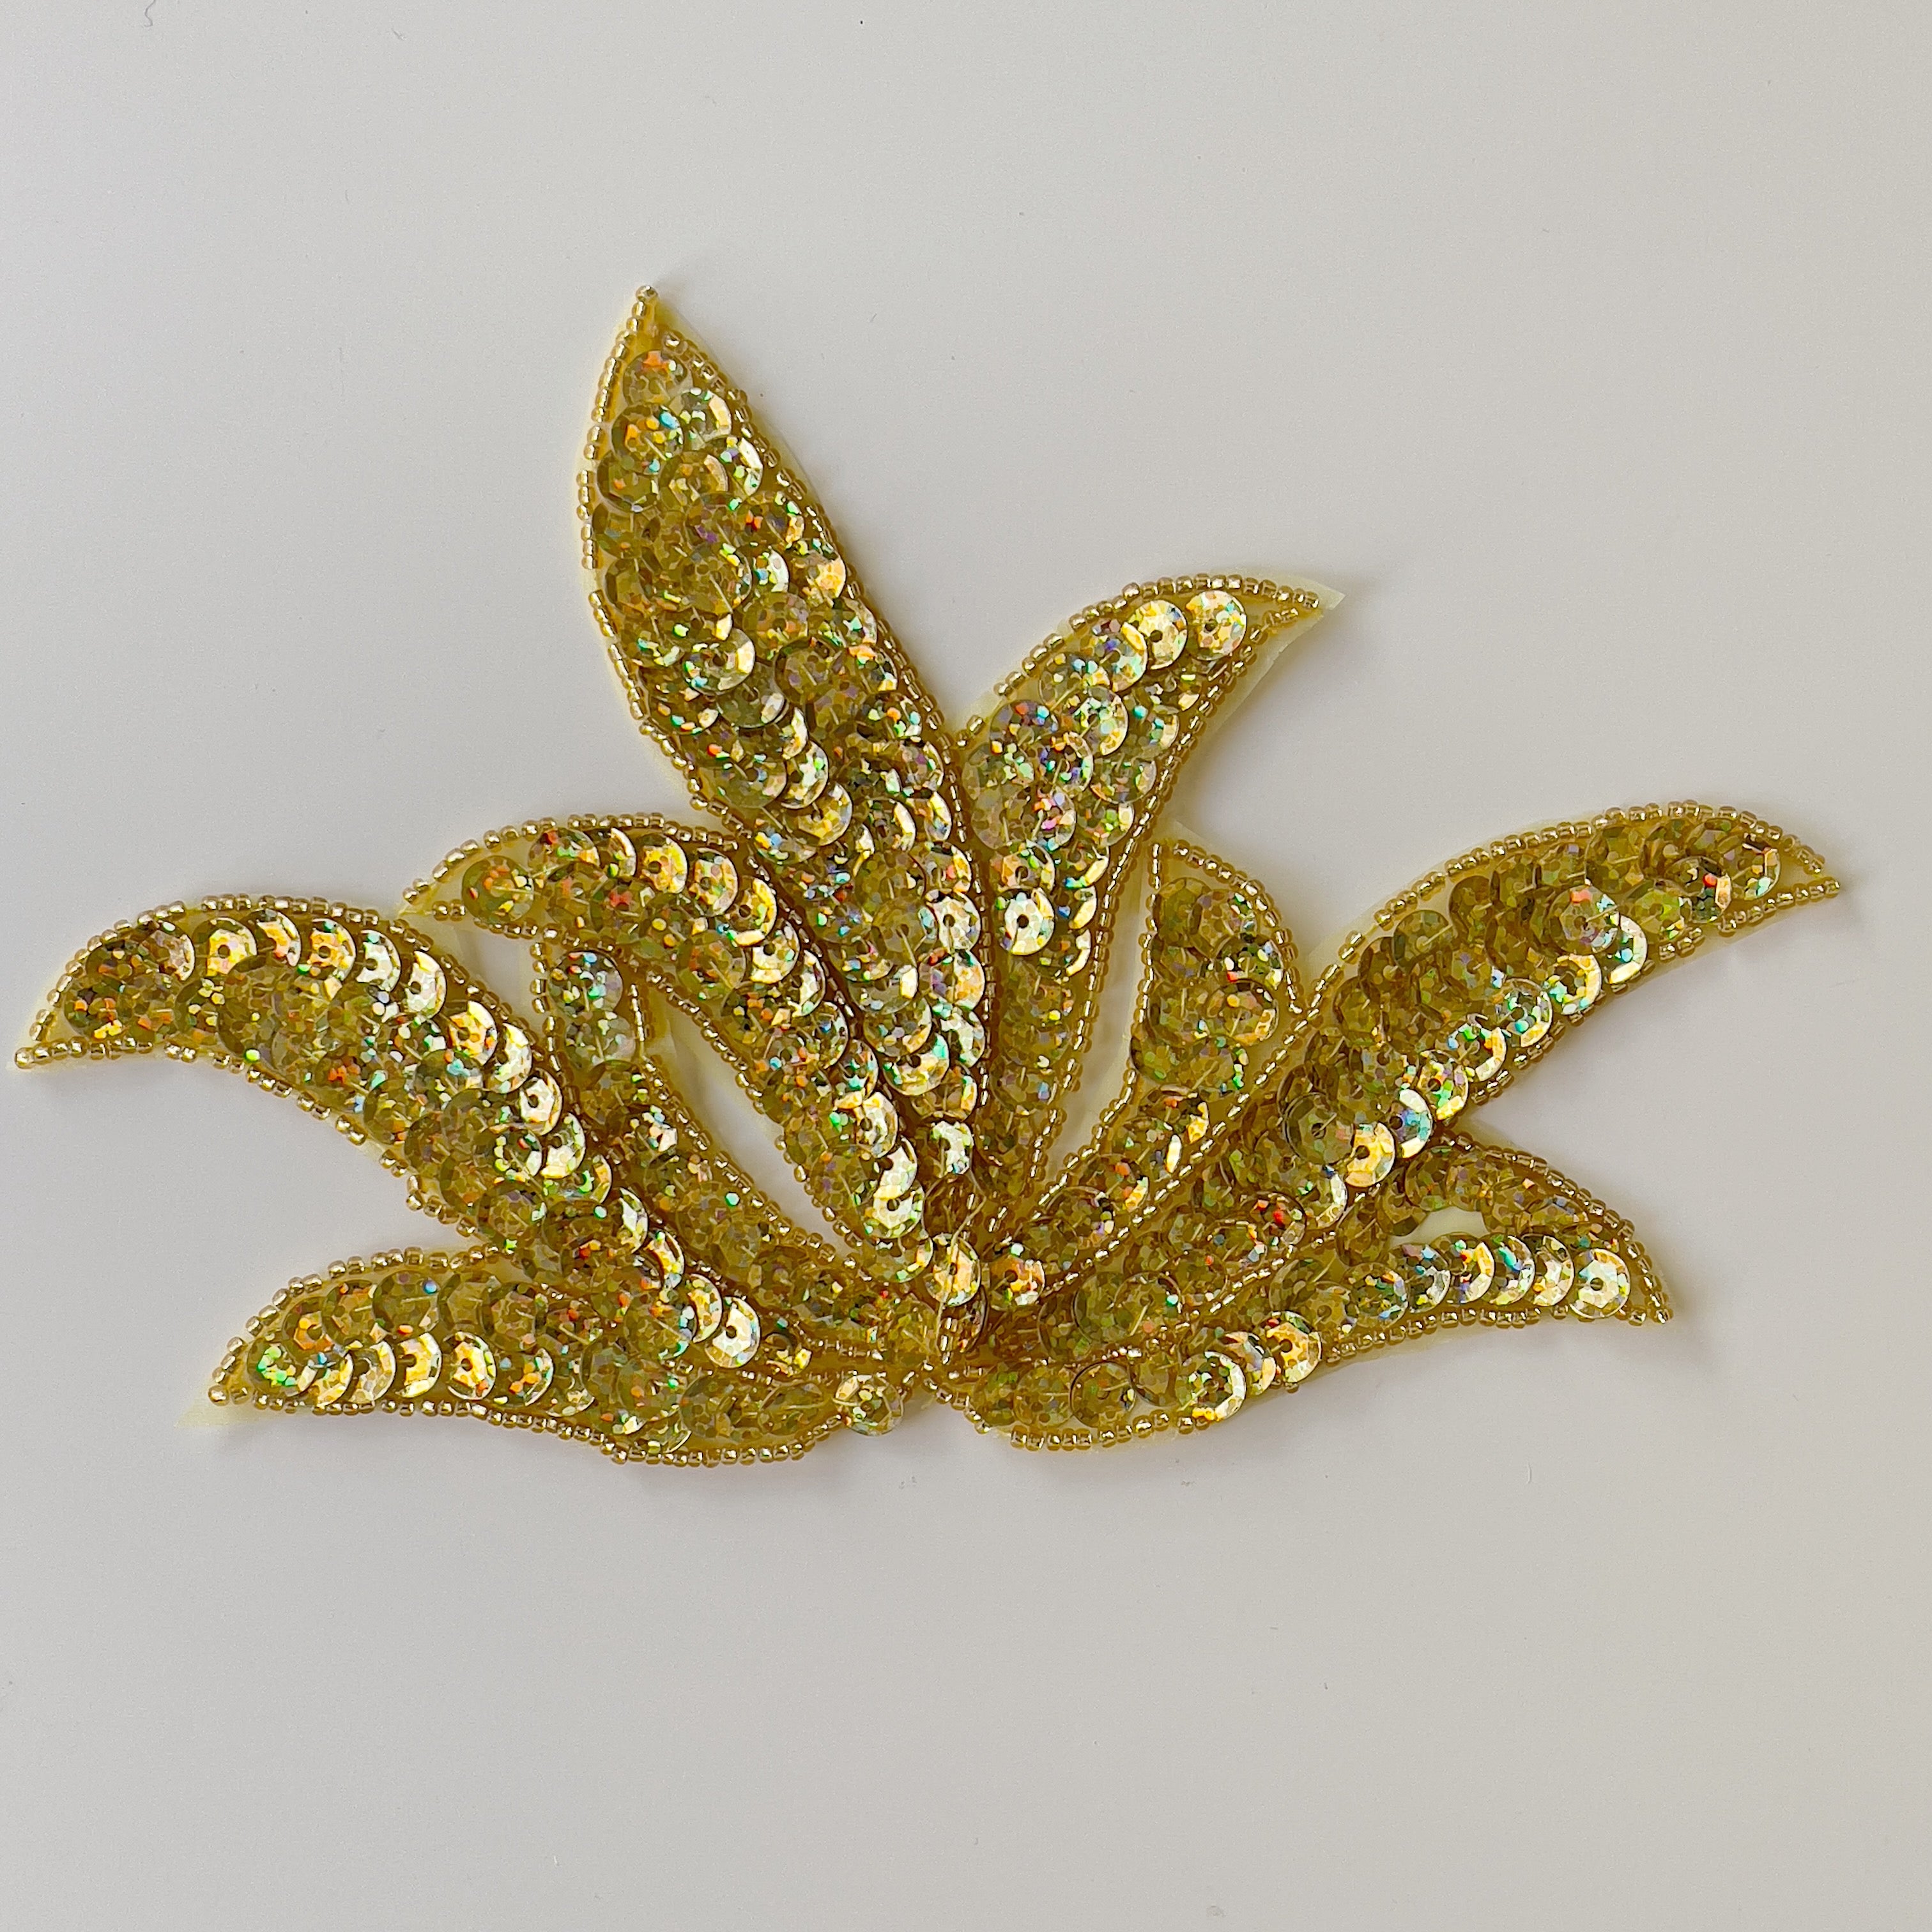 Leaf shaped applique filled with gold hologram sequins.